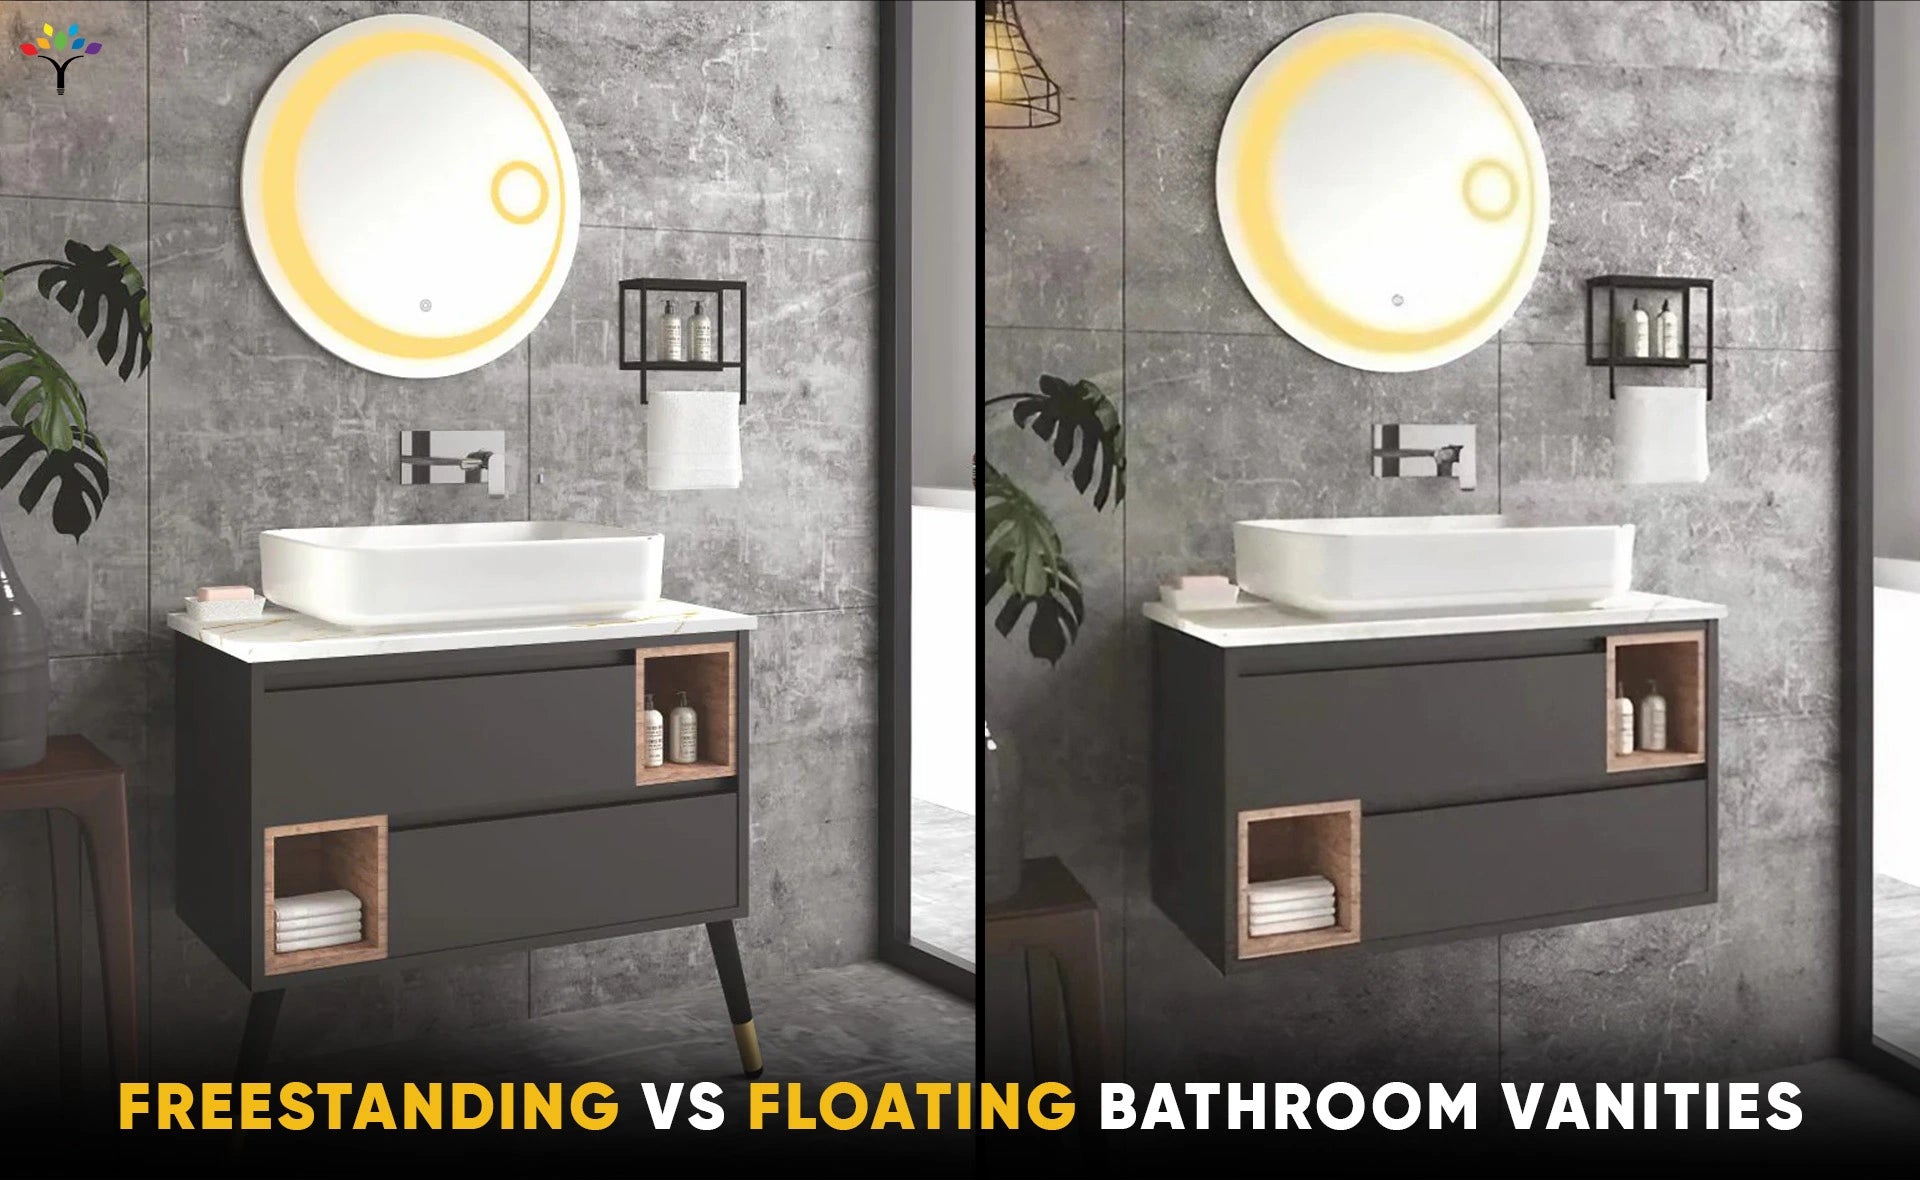 Freestanding vs. Floating Bathroom Vanities